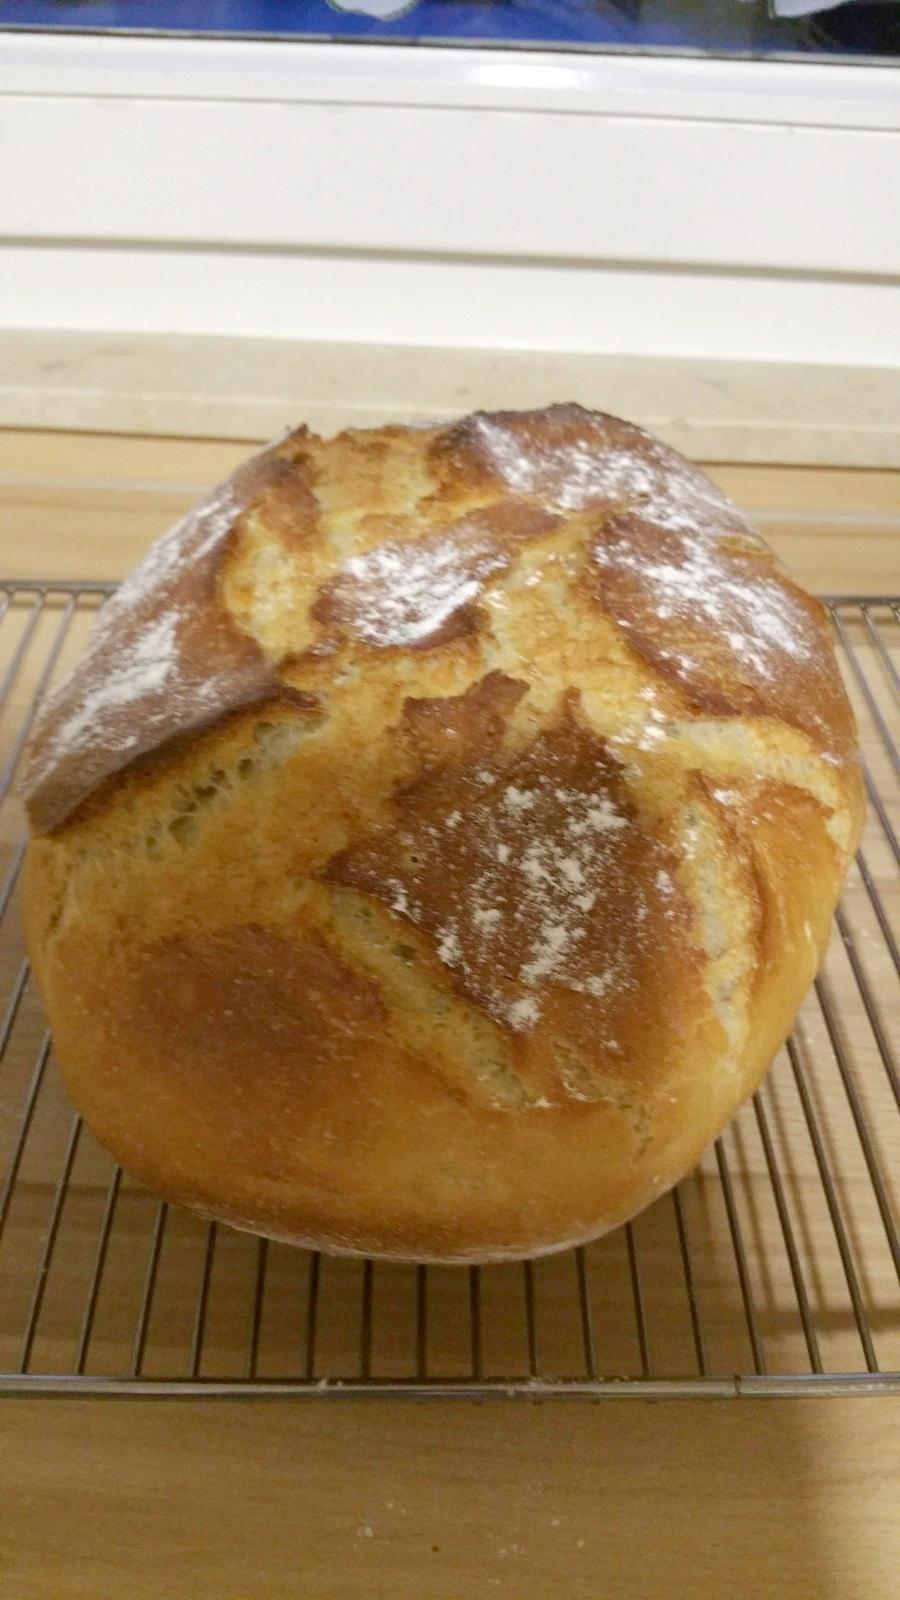 Brot auf dem Rost erkalten lassen, Klopfprobe machen, muss hohl klingen, wenn nicht, nachbacken ohne Römertopf.